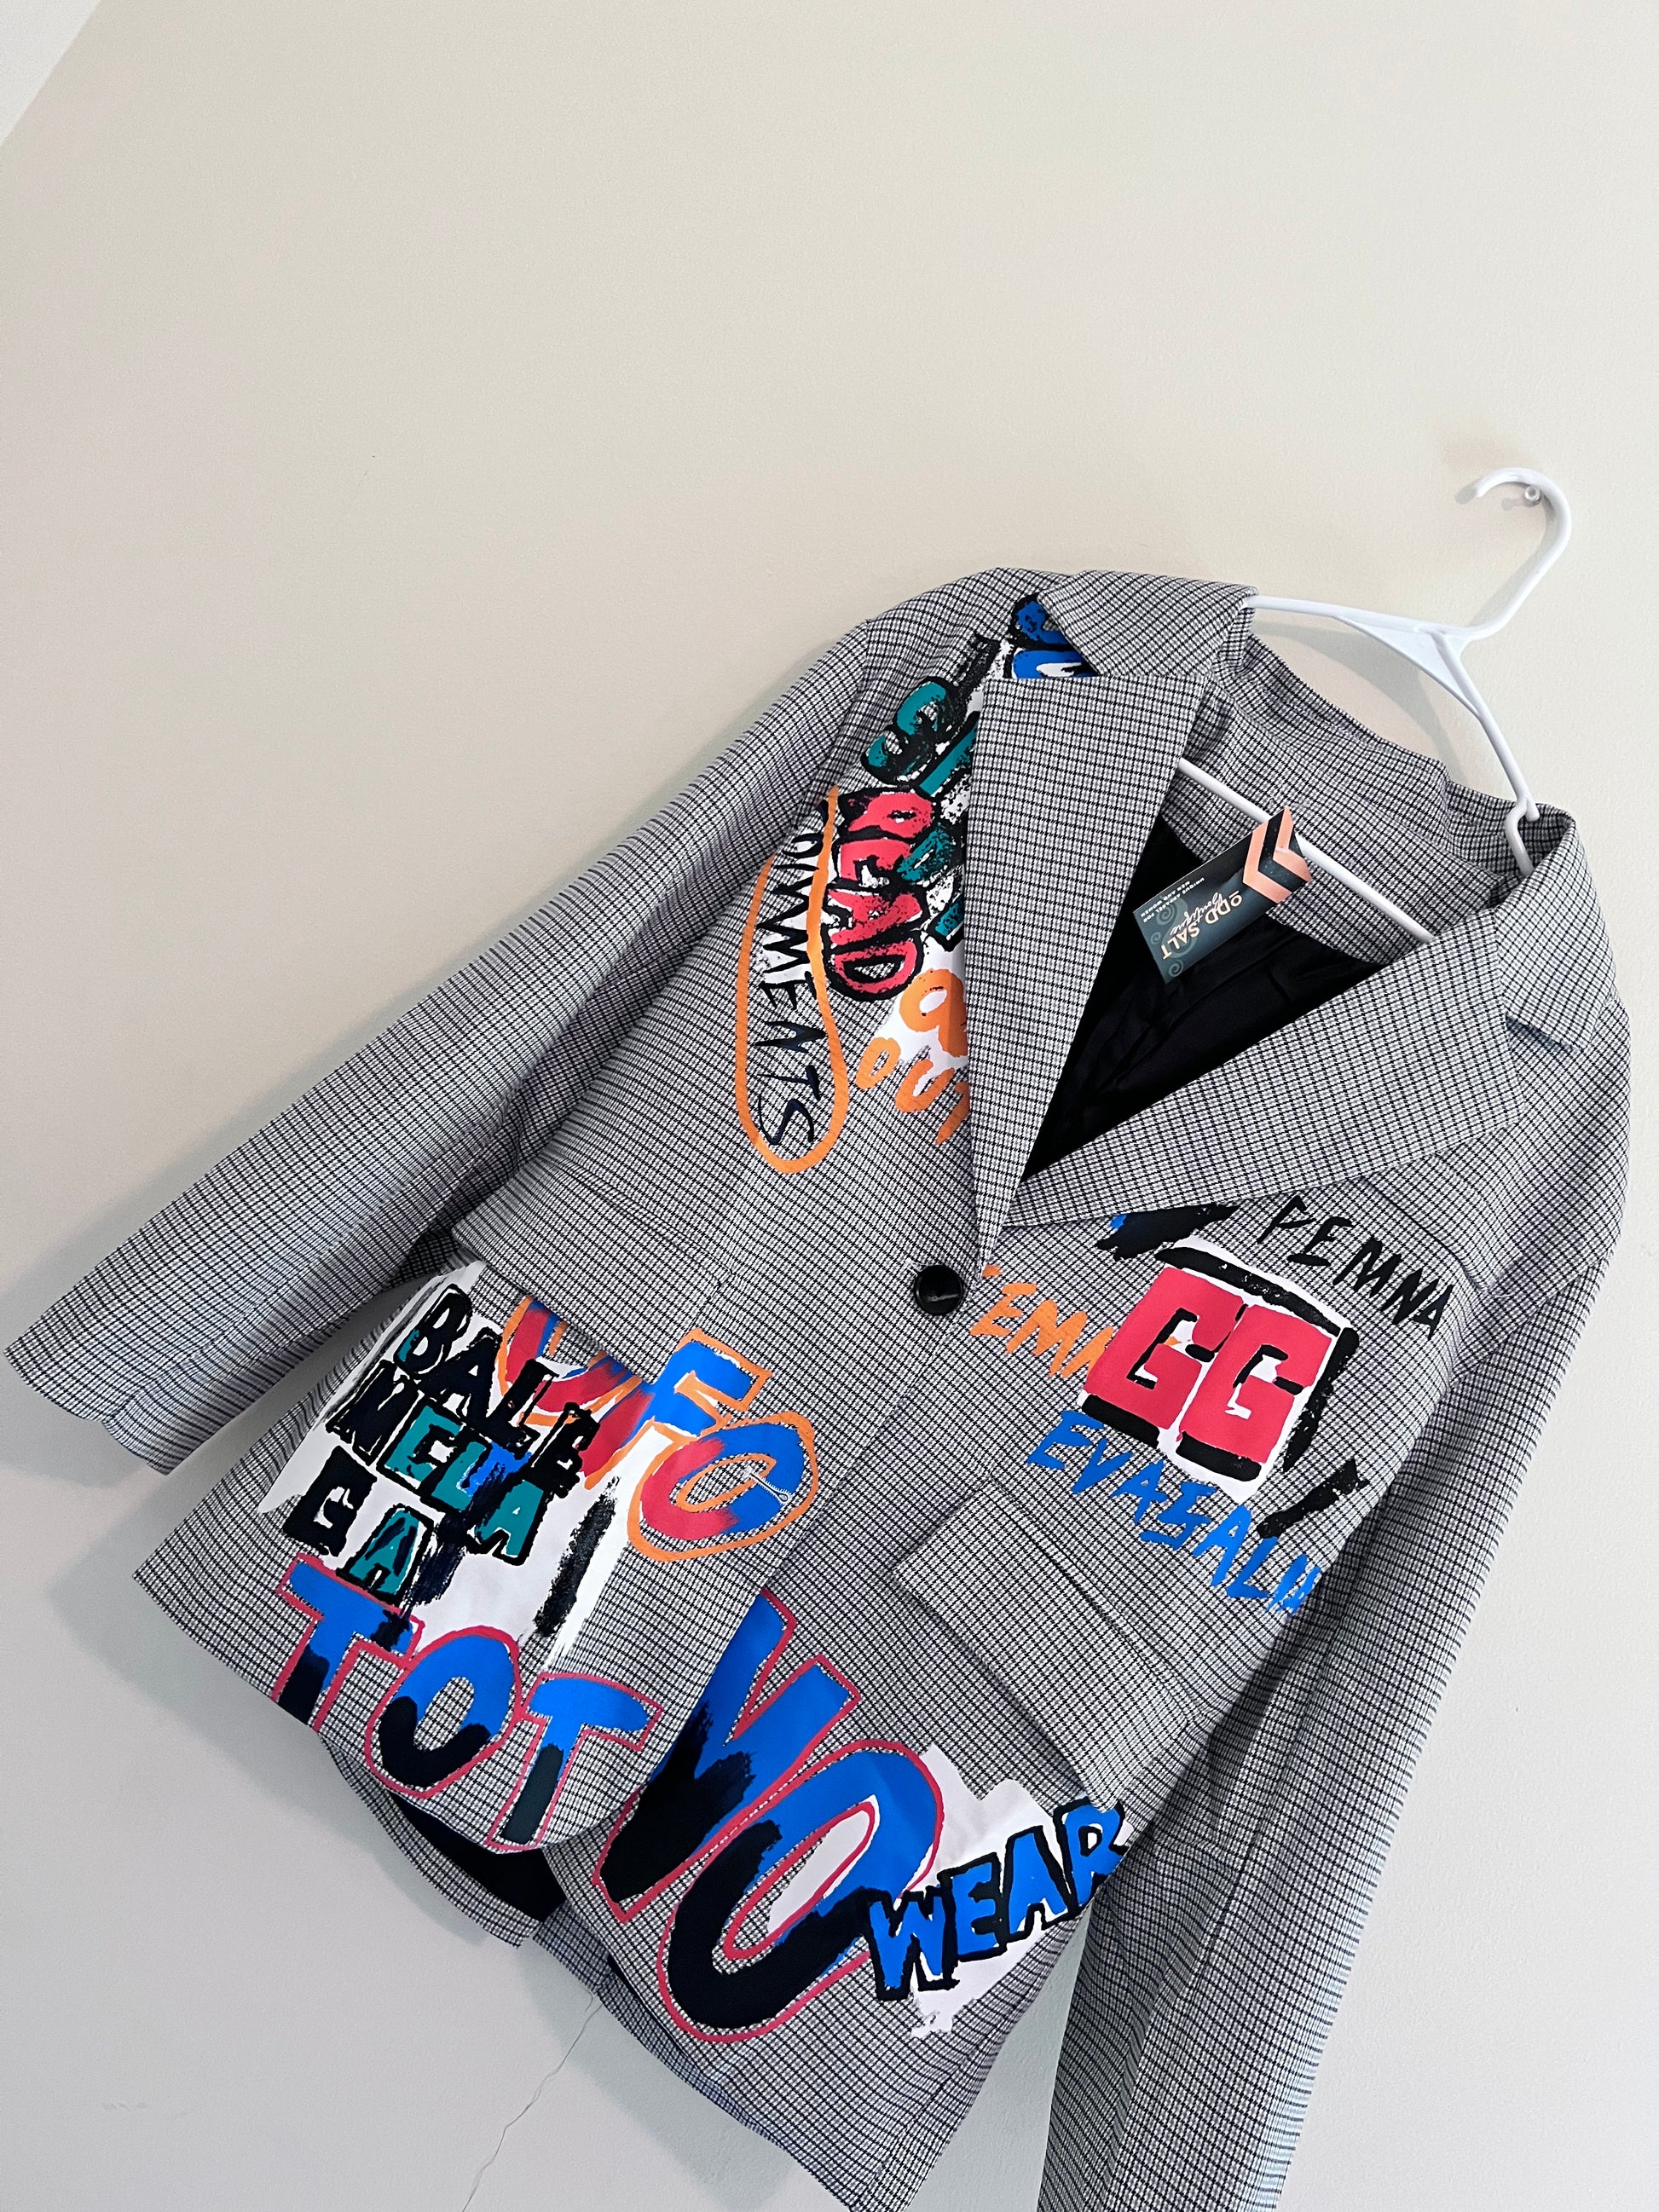 Graffiti Suit Jacket - ODDSALTBoutique